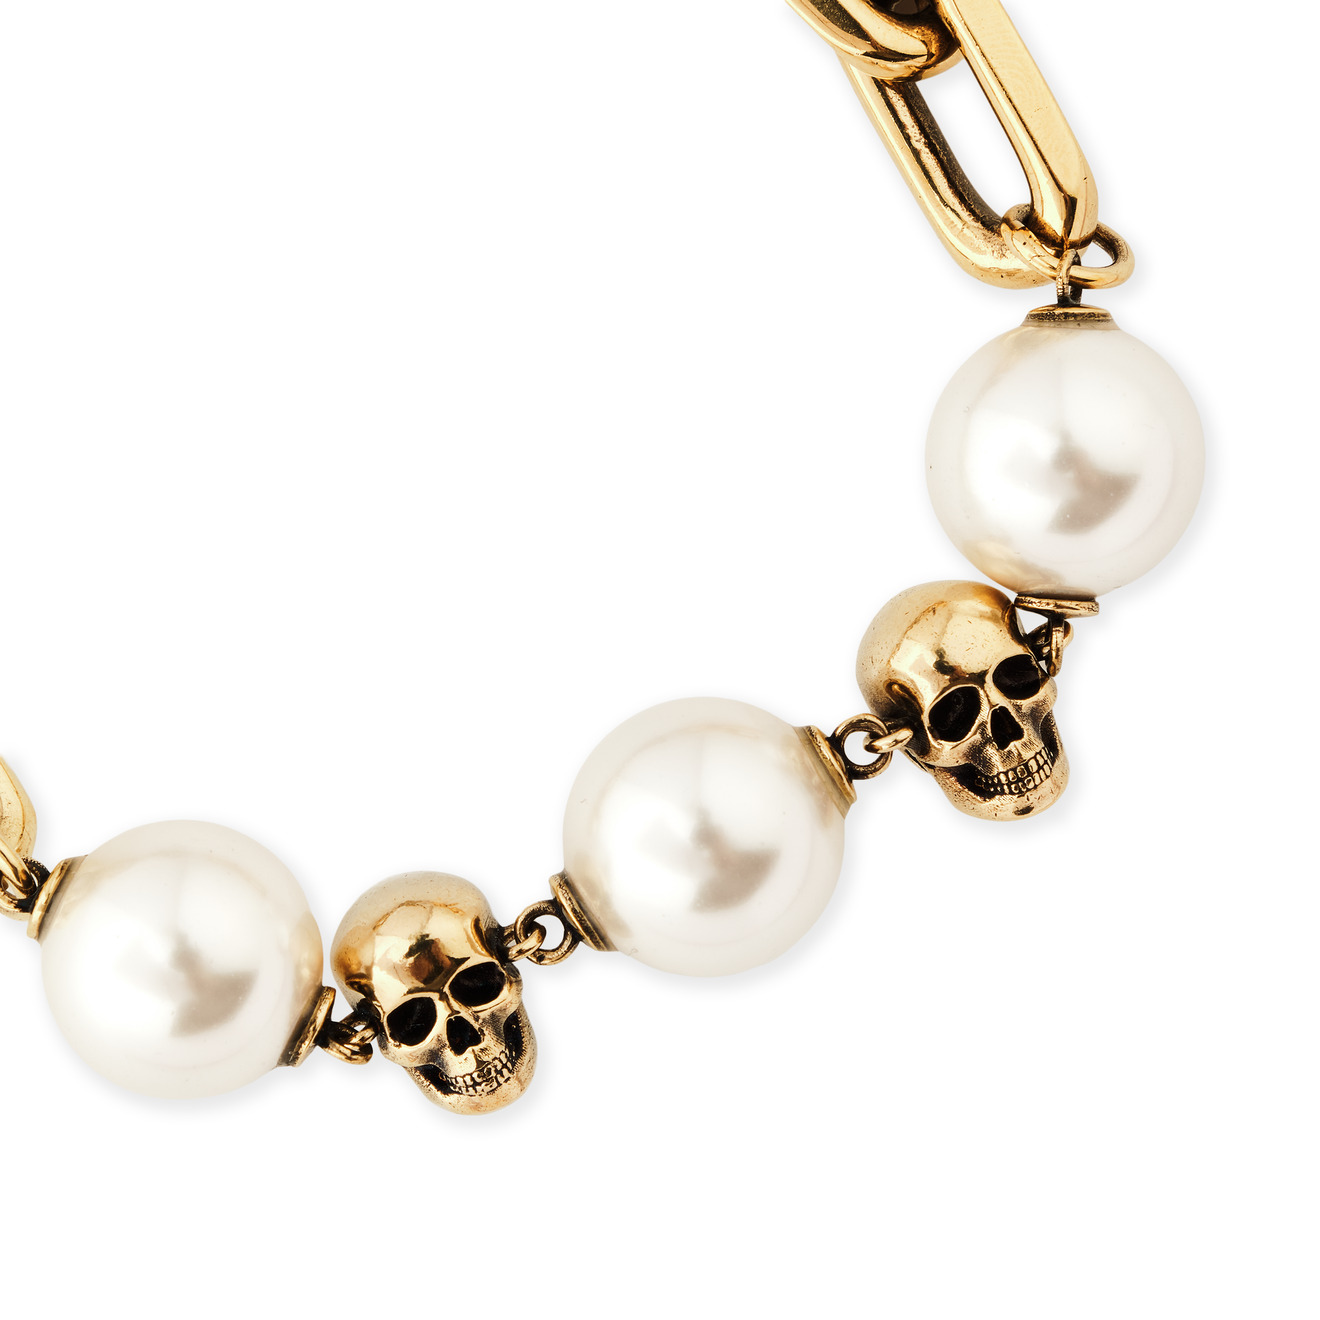 Alexander McQueen Золотистый браслет с жемчужинами CHAIN PEARL BRACELET alexander mcqueen золотистый браслет с жемчужинами chain pearl bracelet